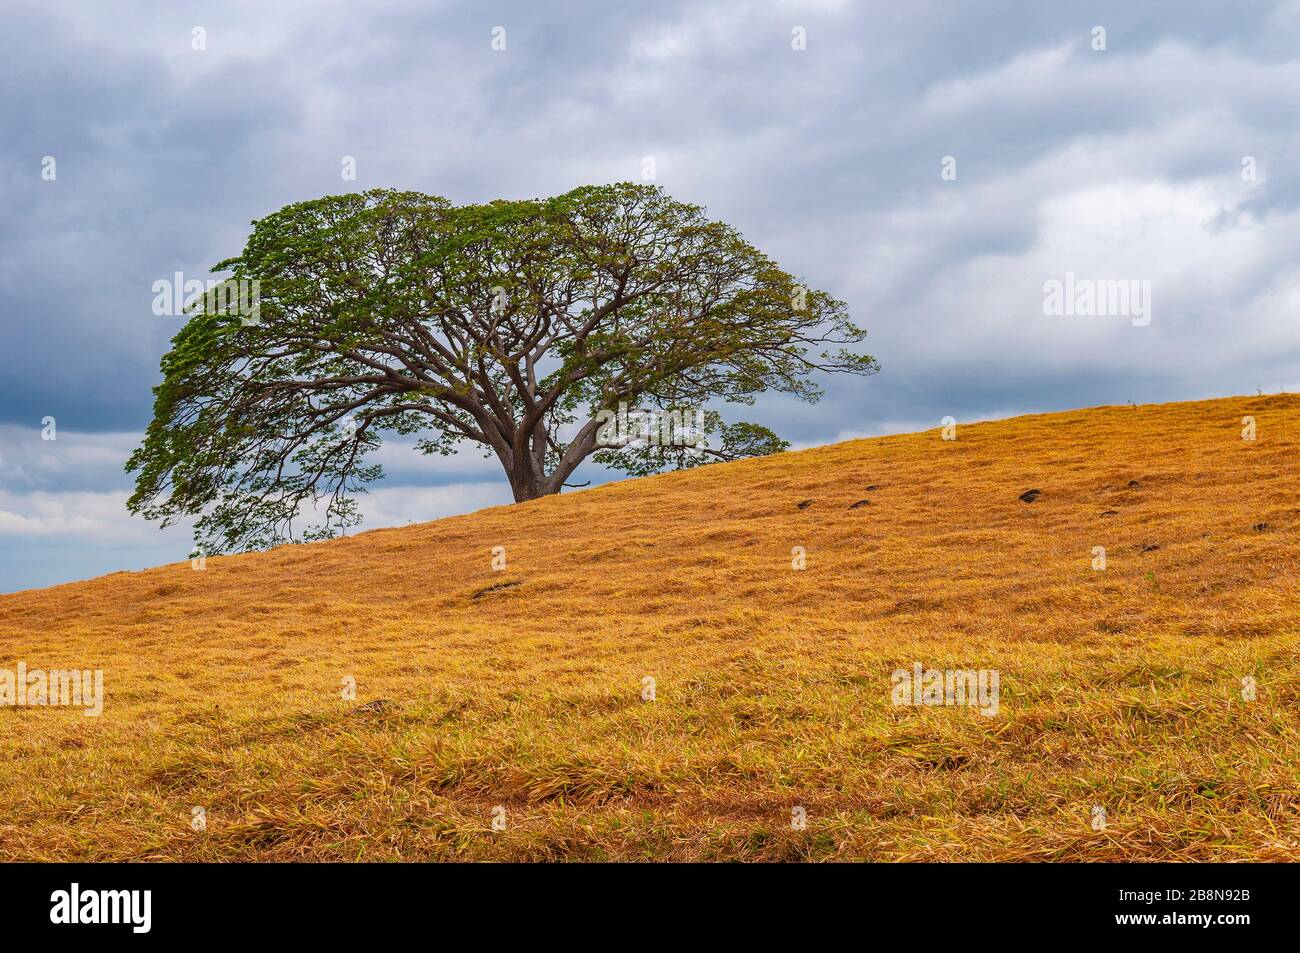 Der Guanacaste Baum (Enterolobium Cyclocarpum) ist der Nationalbaum von Costa Rica, Provinz Guanacaste. Stockfoto